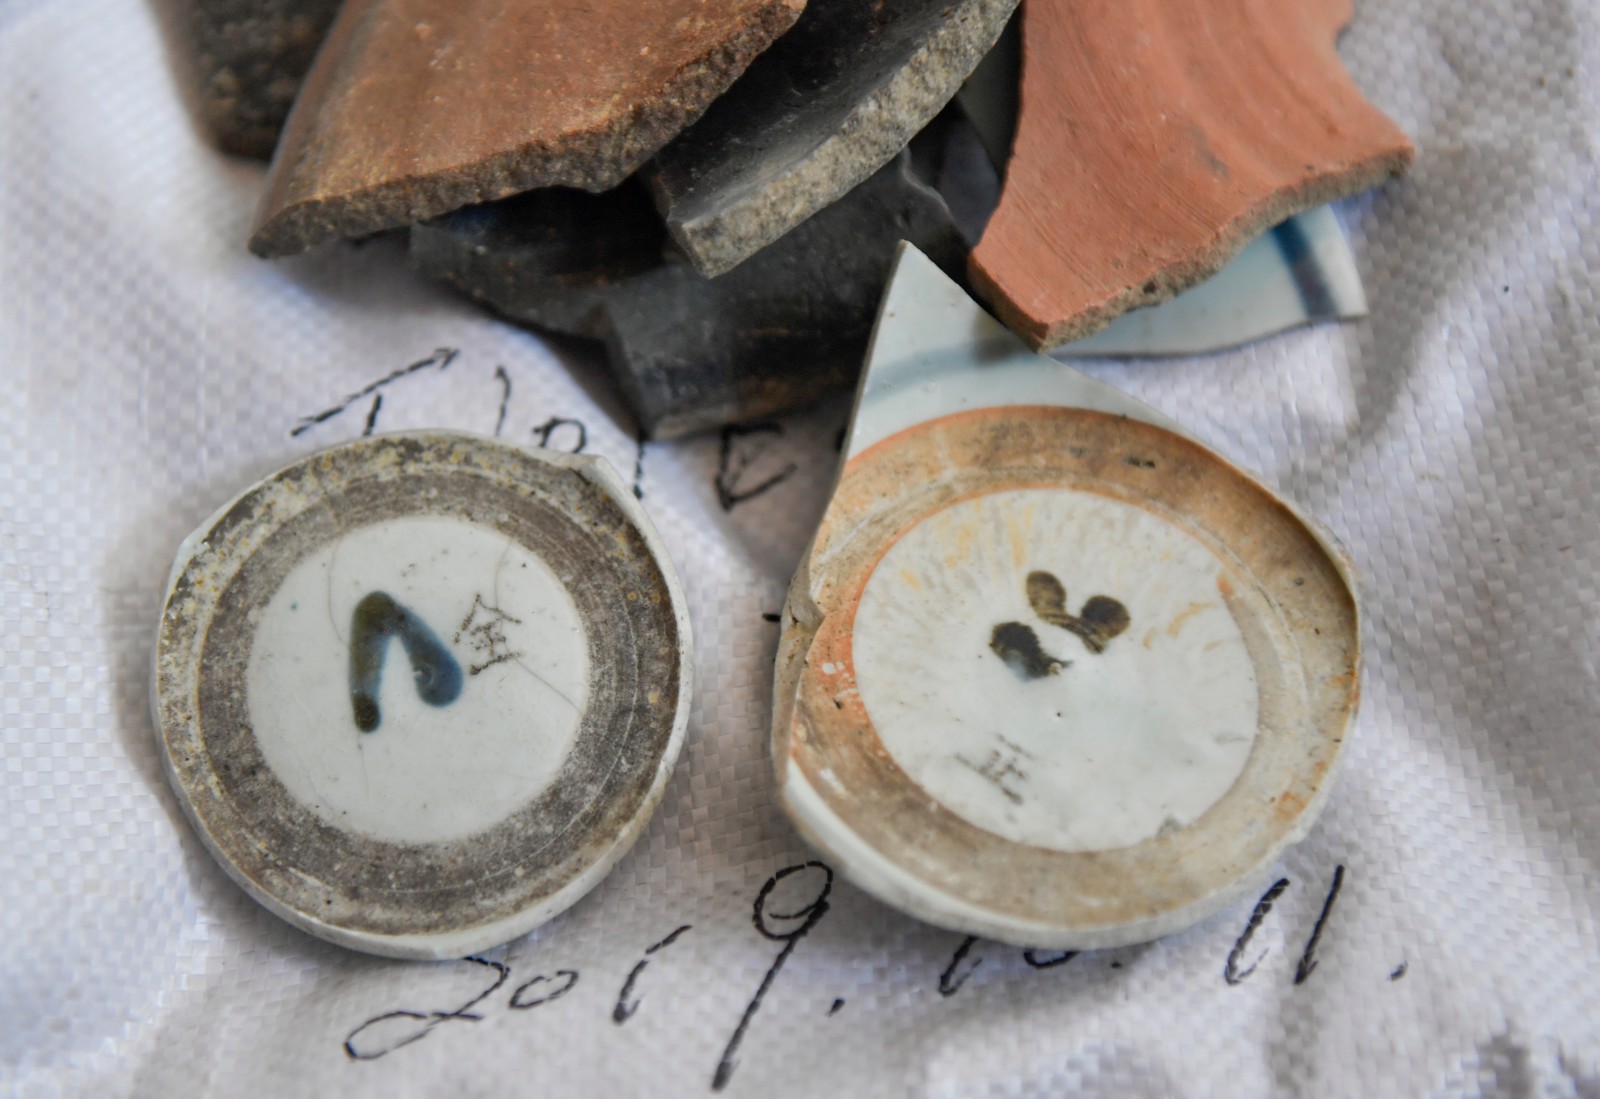 平江福寿山大湖坪遗址考古发掘出的带有全字和正字的陶瓷残片。